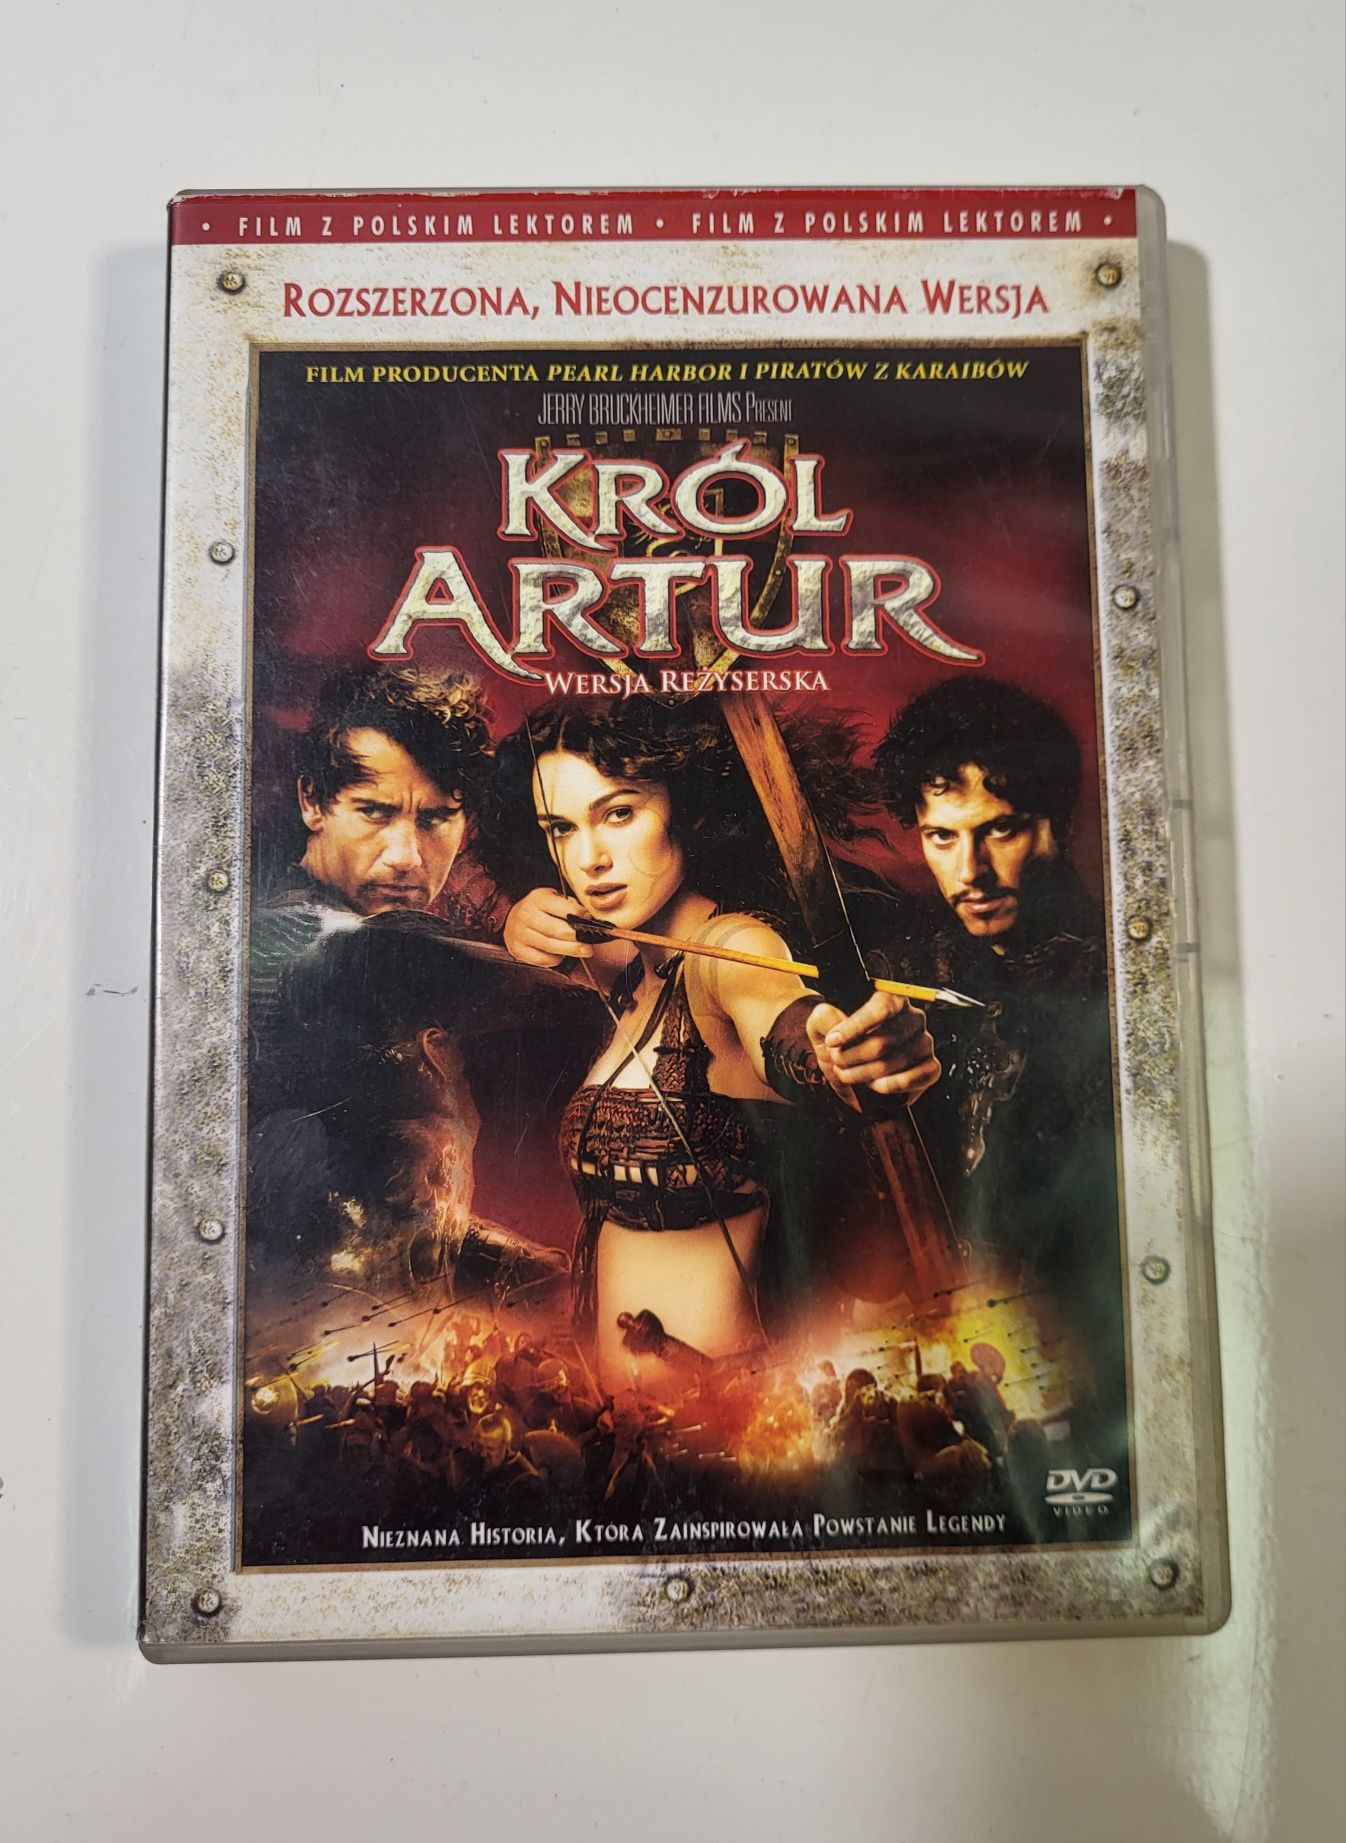 Król Artur wersja reżyserska rozszerzona nieocenzurowana wersja dvd